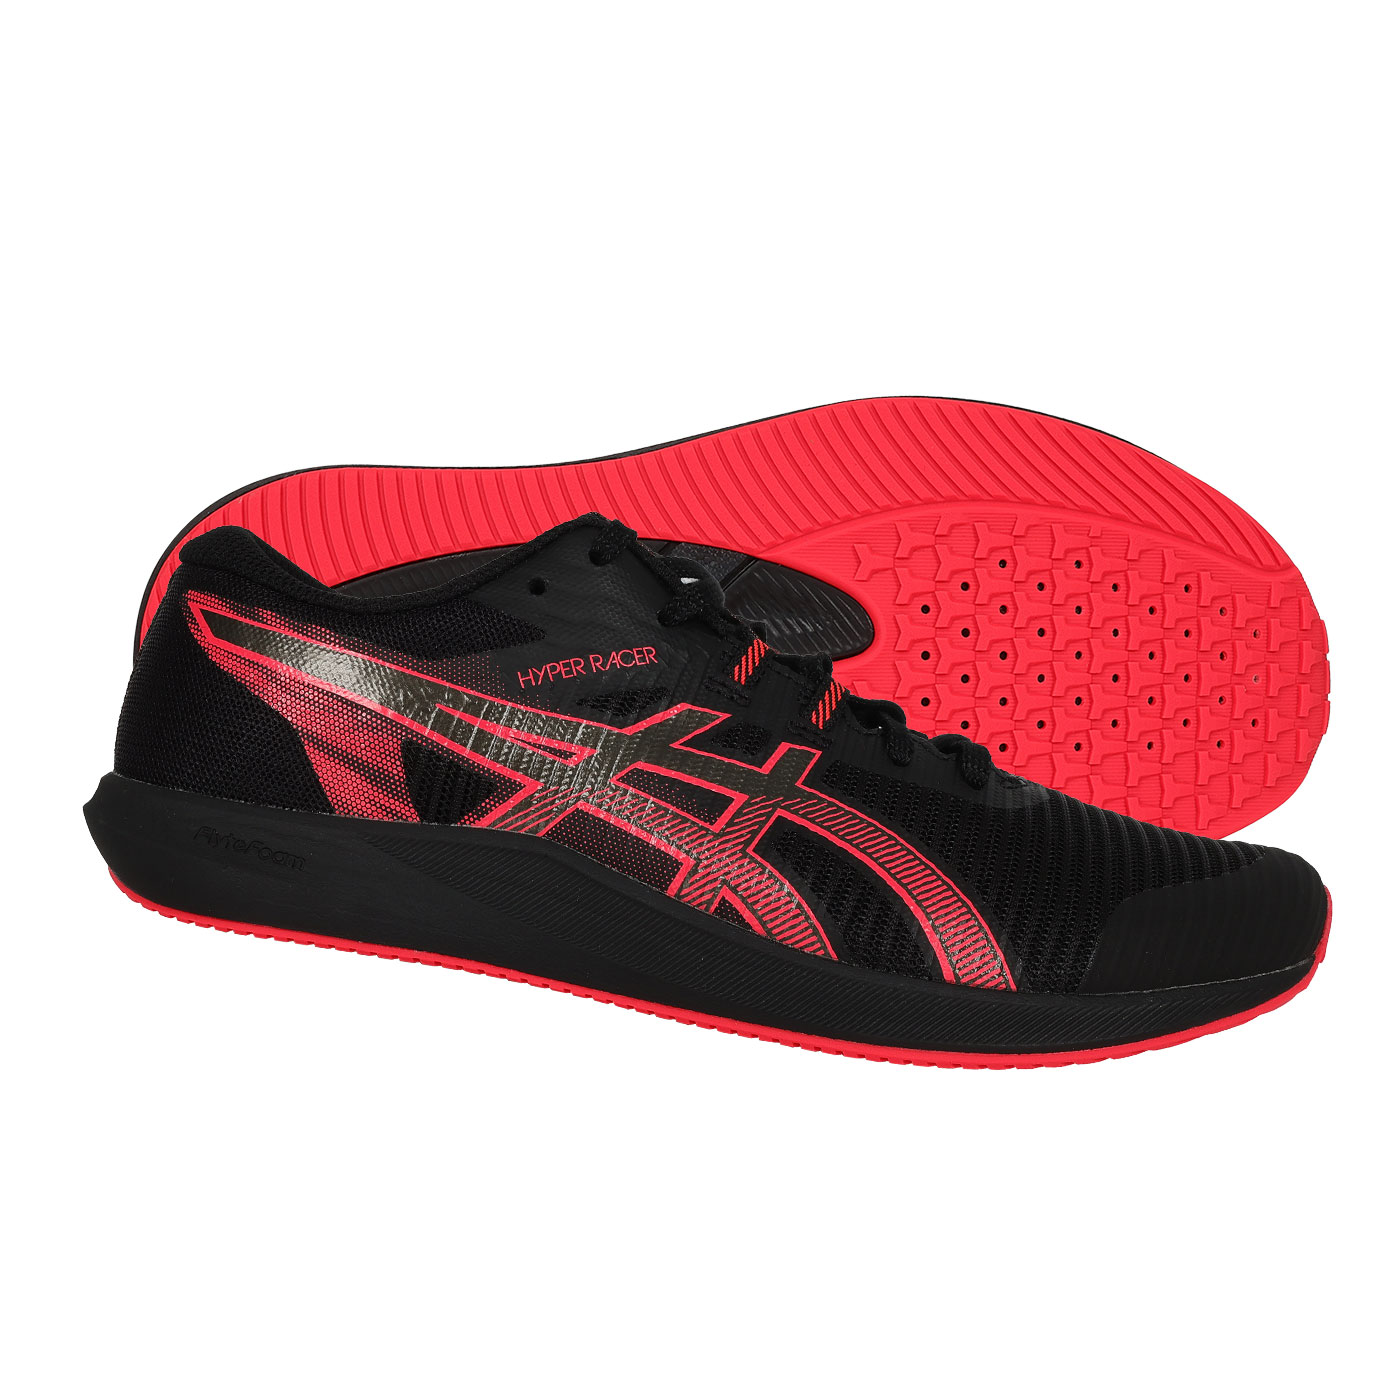 ASICS 特定-田徑訓練鞋  @HYPER RACER@ 1093A233-001 - 黑亮紅